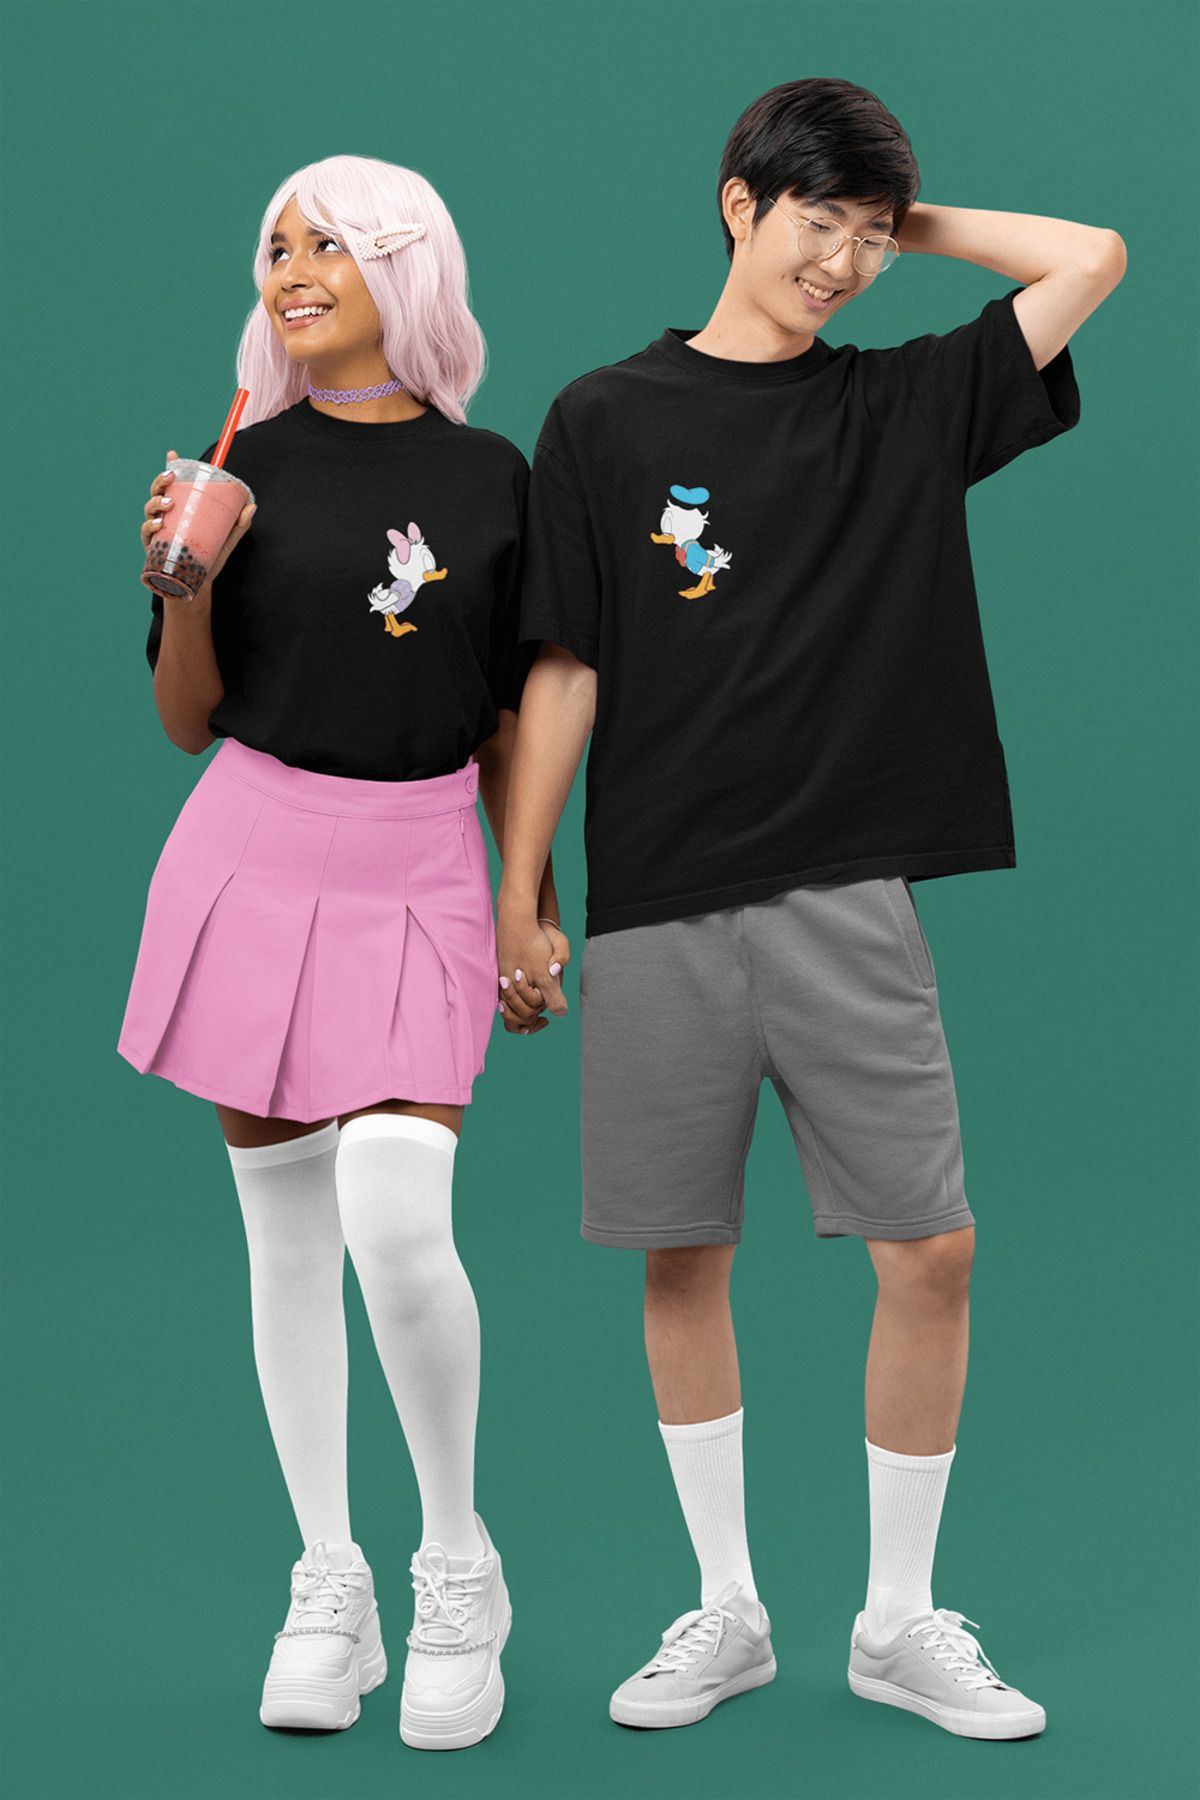 POPULUS Daisy ve Donald Duck Sevgili/Çift/Arkadaşlık 2'li Tişört Seti